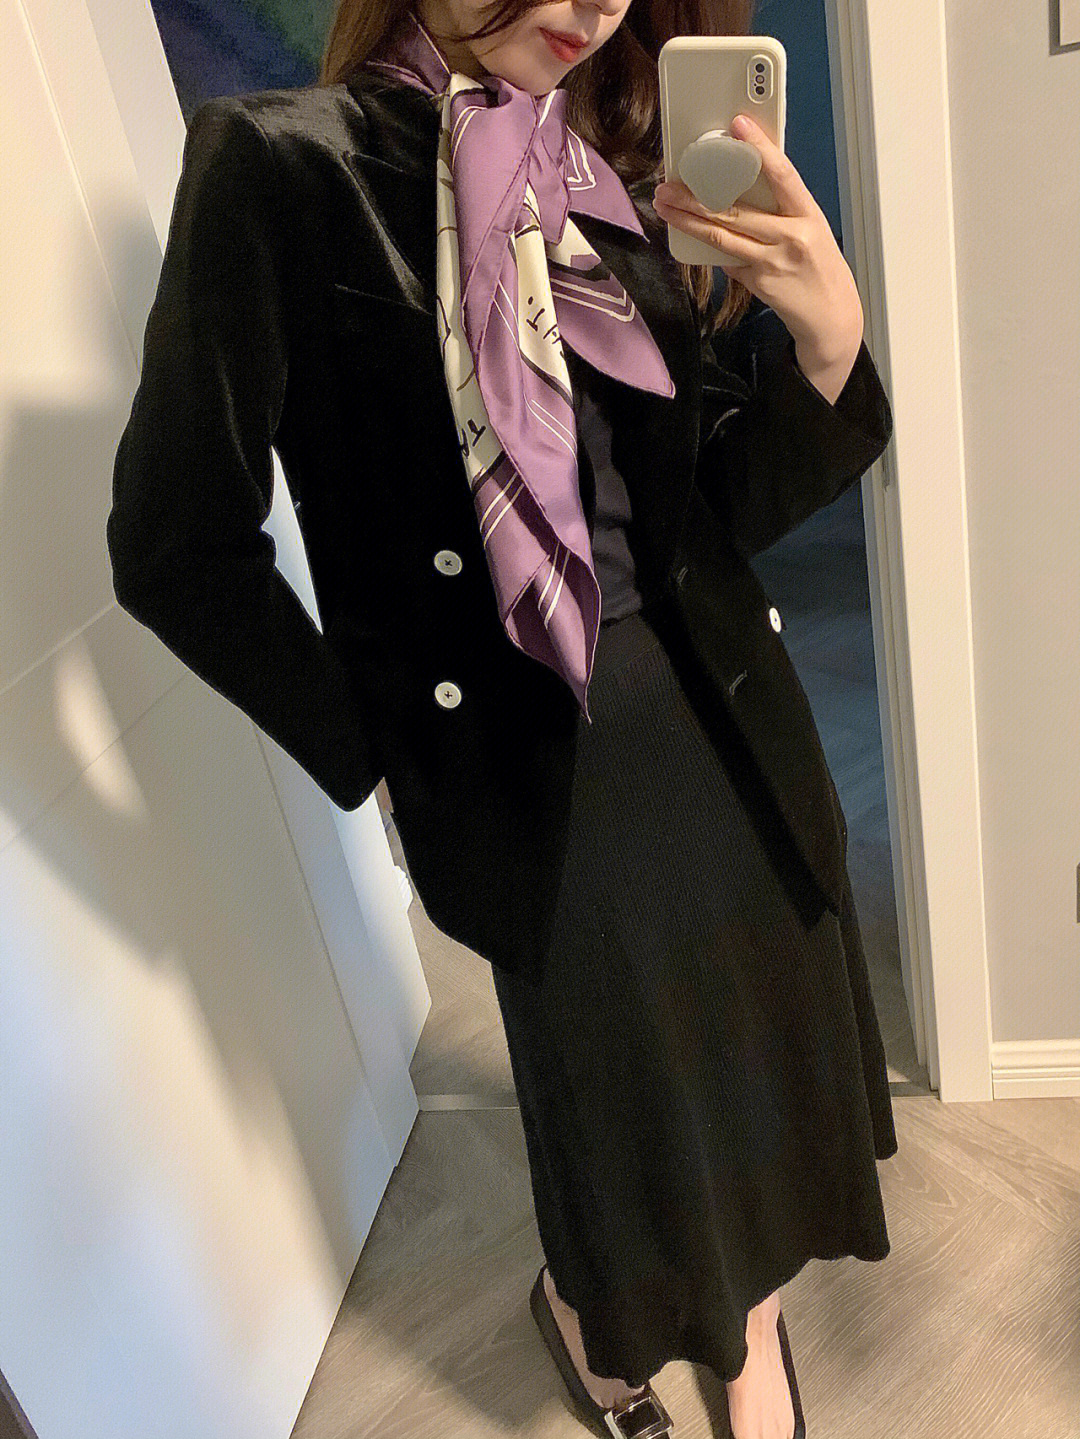 的今天穿了这件黑色的丝绒外套搭了一条紫色的丝巾紫藤花的图案很喜欢